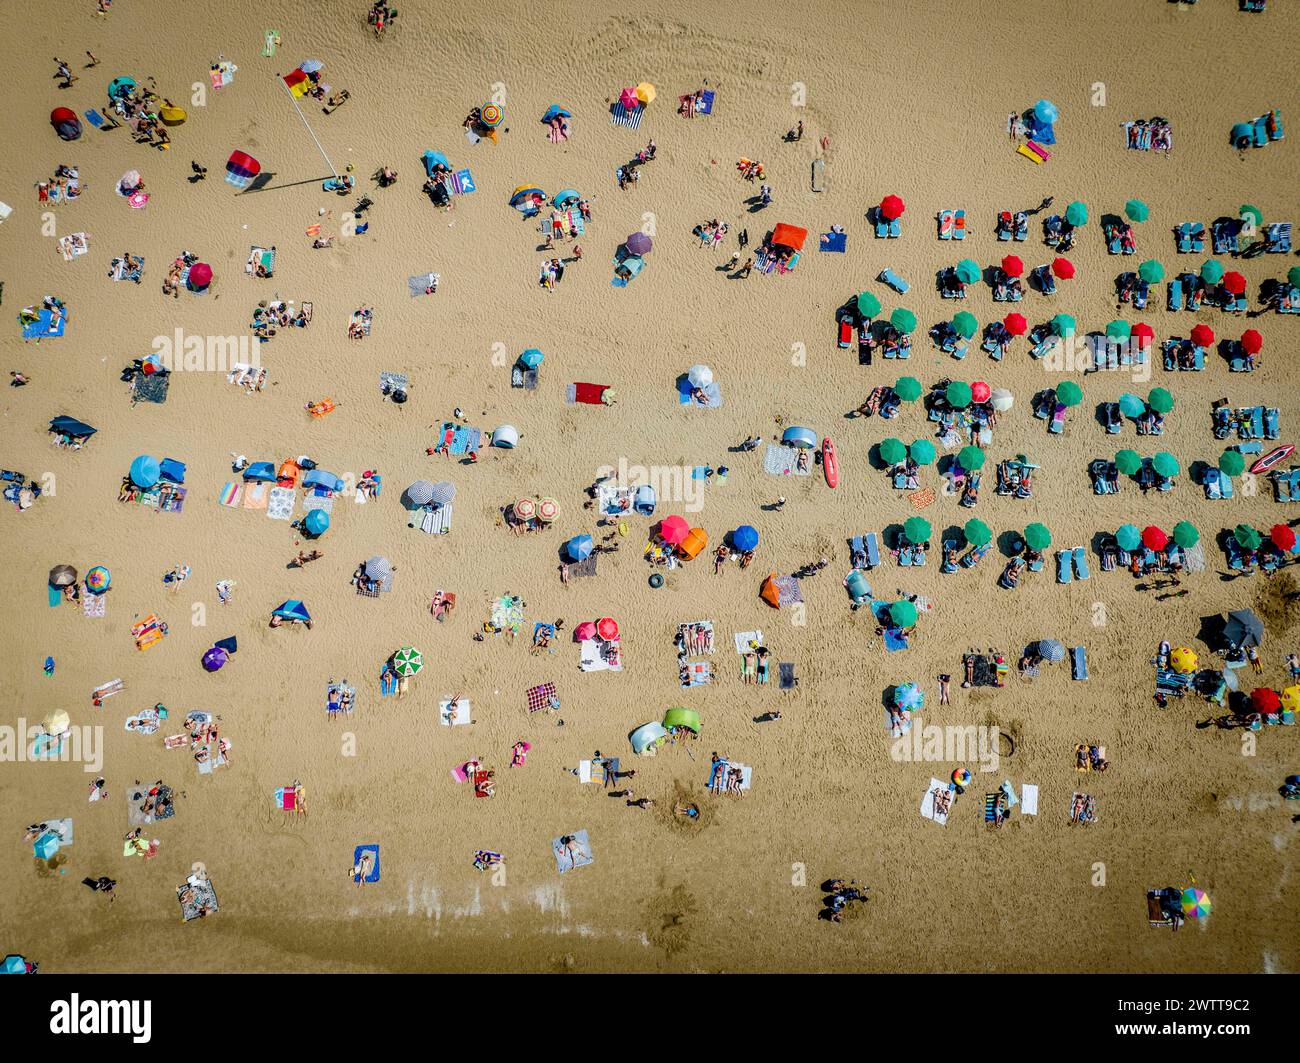 SCHEVINGEN - Menschenmassen am Strand von Scheveningen während der tropischen Tage genießen viele Menschen die schöne Sonne am Strand. Stockfoto